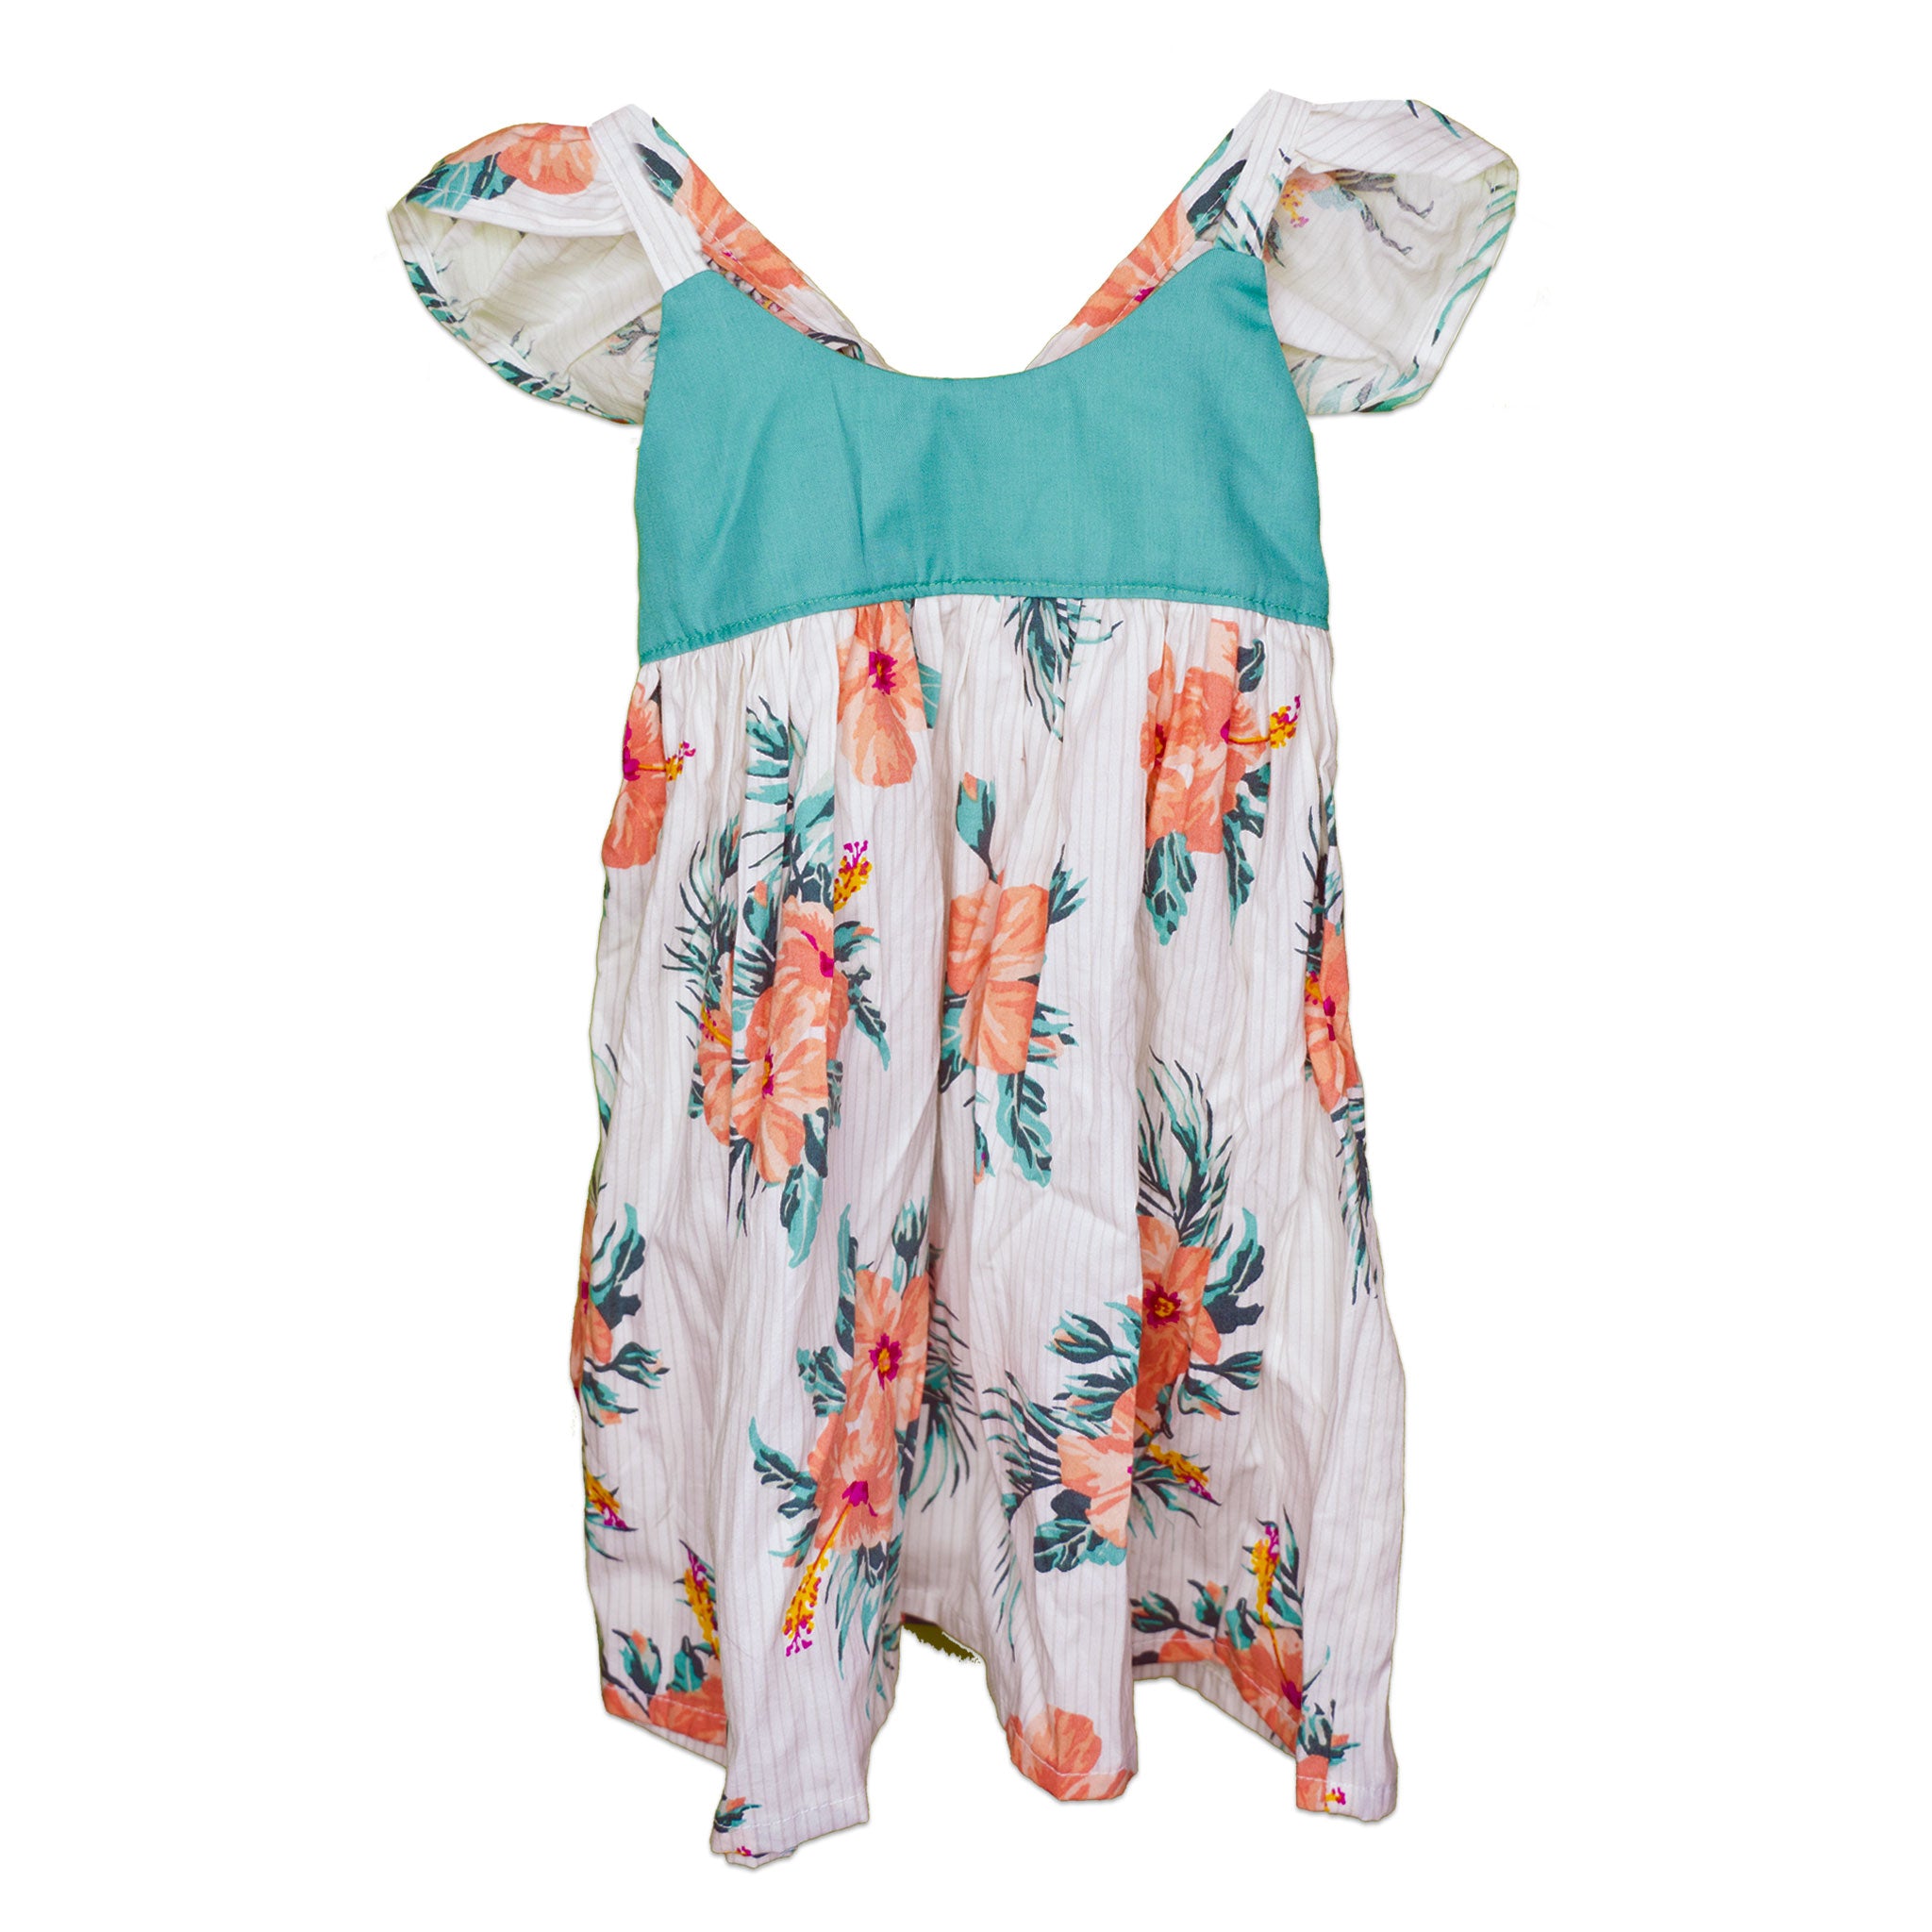 White & Teal Elastic Waist Back Flutter Sleeve Handmade Dress - Toddler